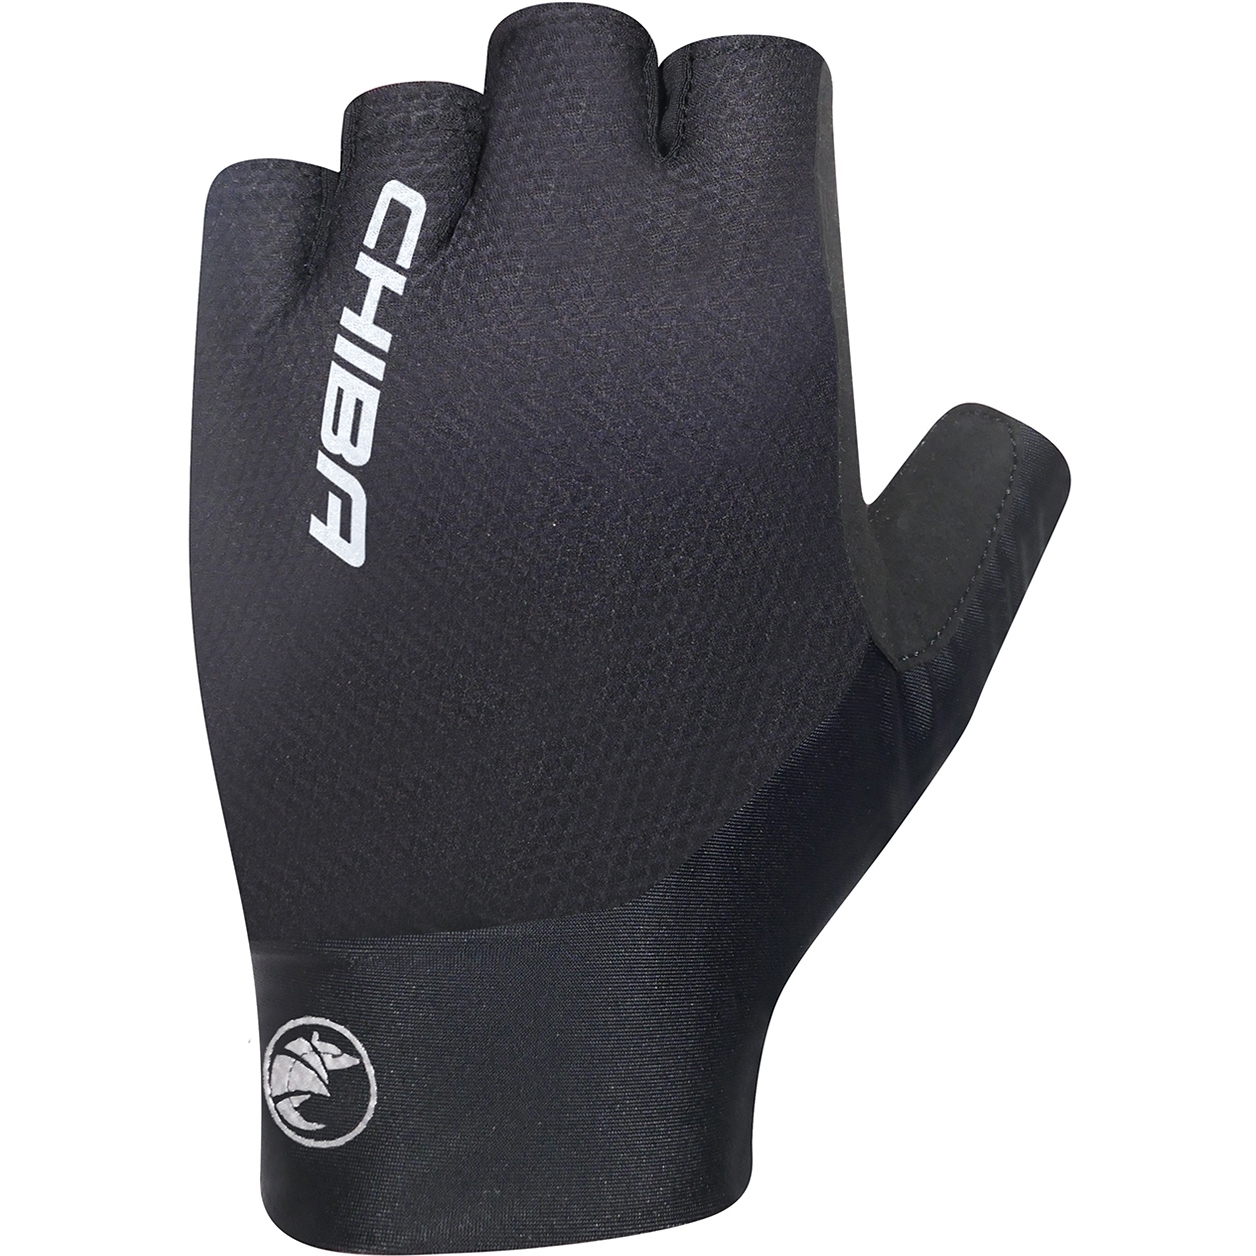 Produktbild von Chiba Team Pro Kurzfinger-Handschuhe - schwarz